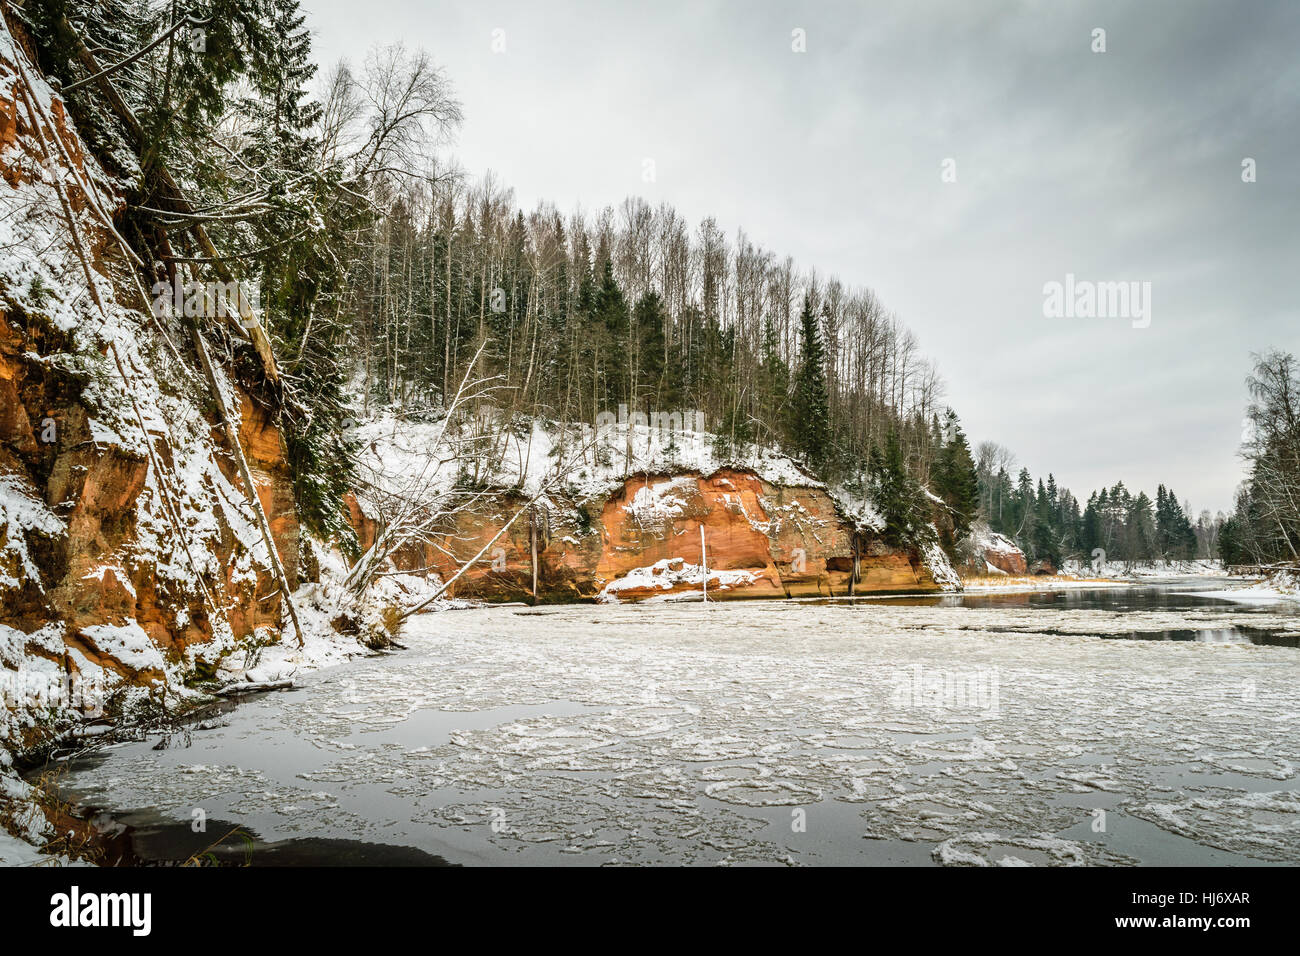 Acantilados de arenisca junto al río cubiertas de hielo paisaje fotografía Foto de stock